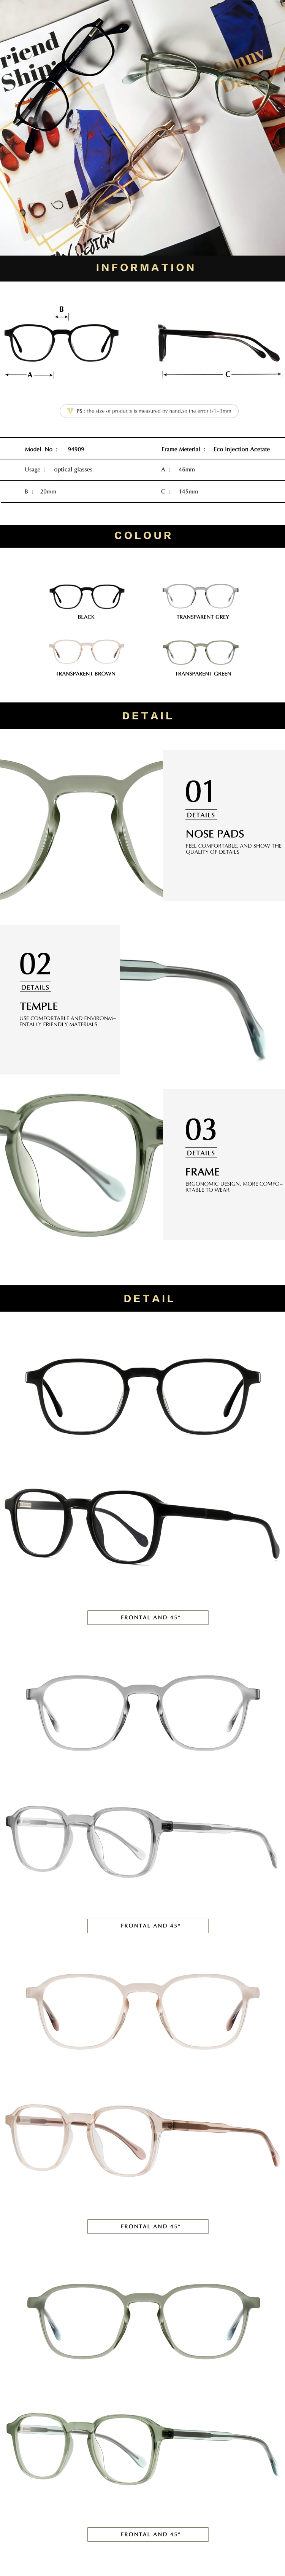 unisex light acetate optical glasses frame